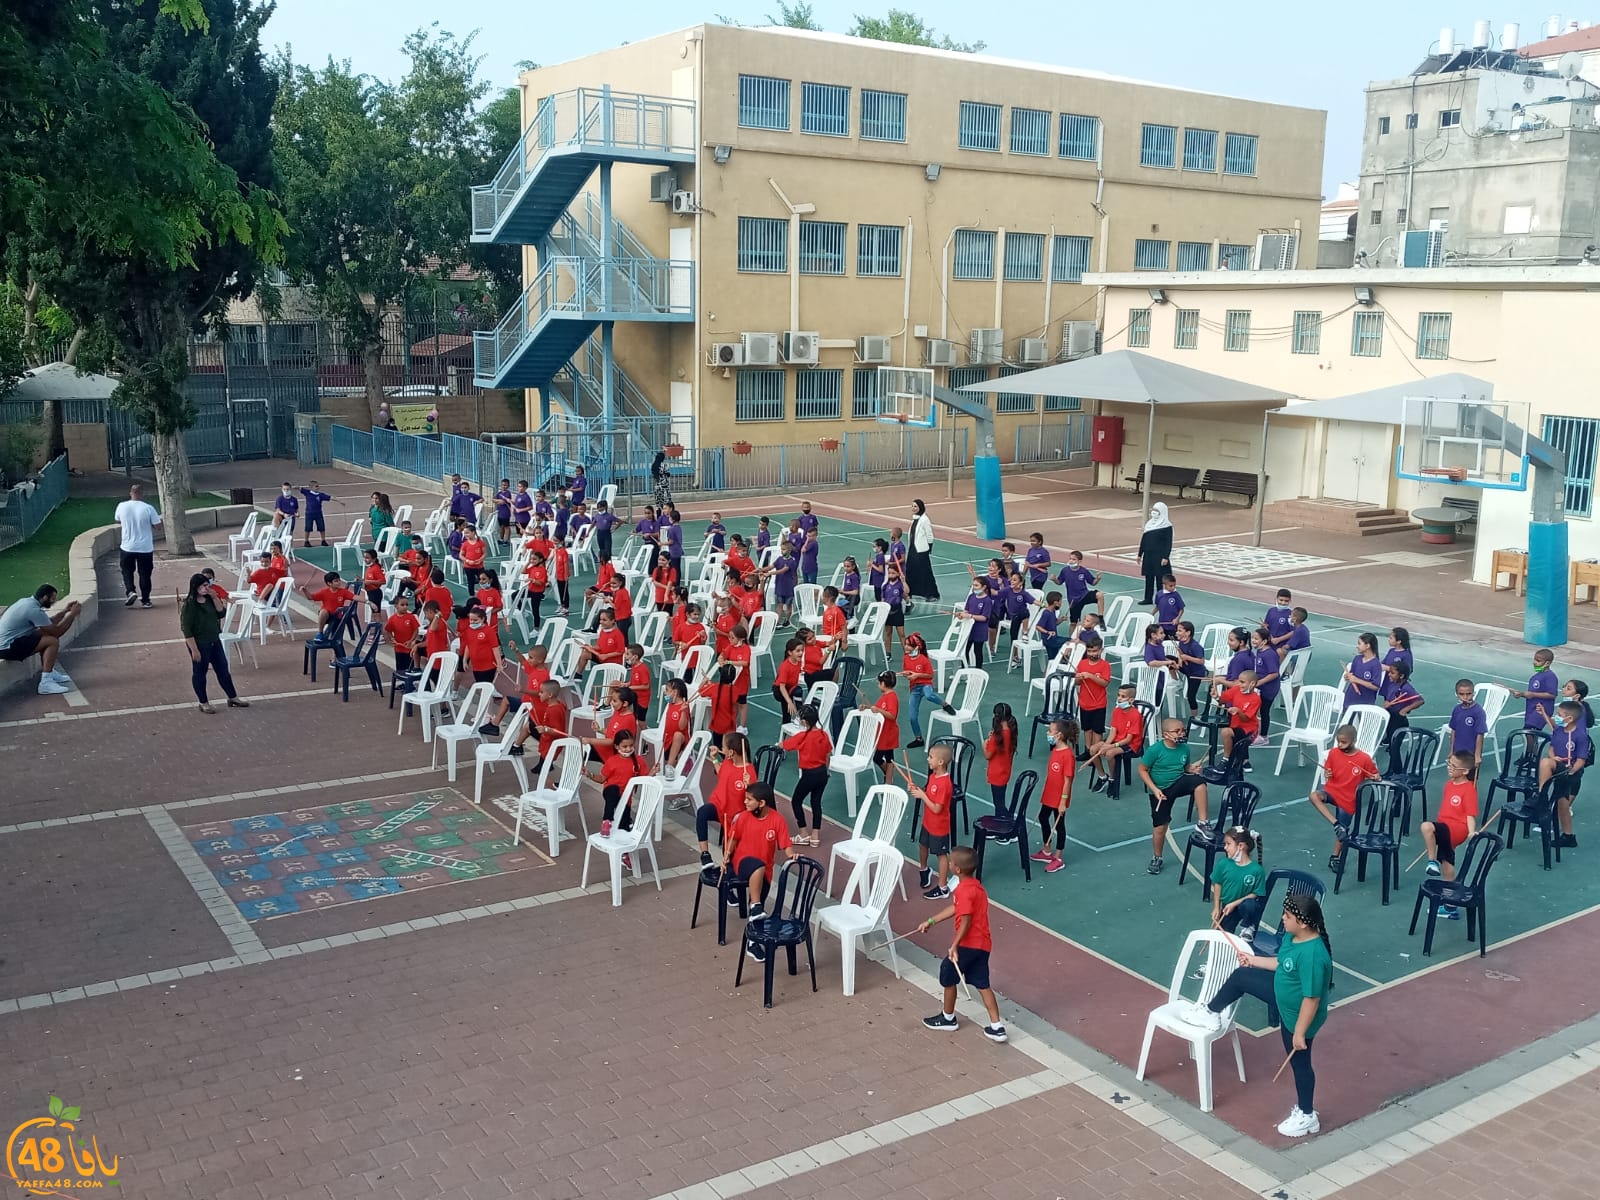 فيديو: مدرسة أجيال الابتدائية تفتتح العام الدراسي الجديد بفعاليات شيّقة للطلاب